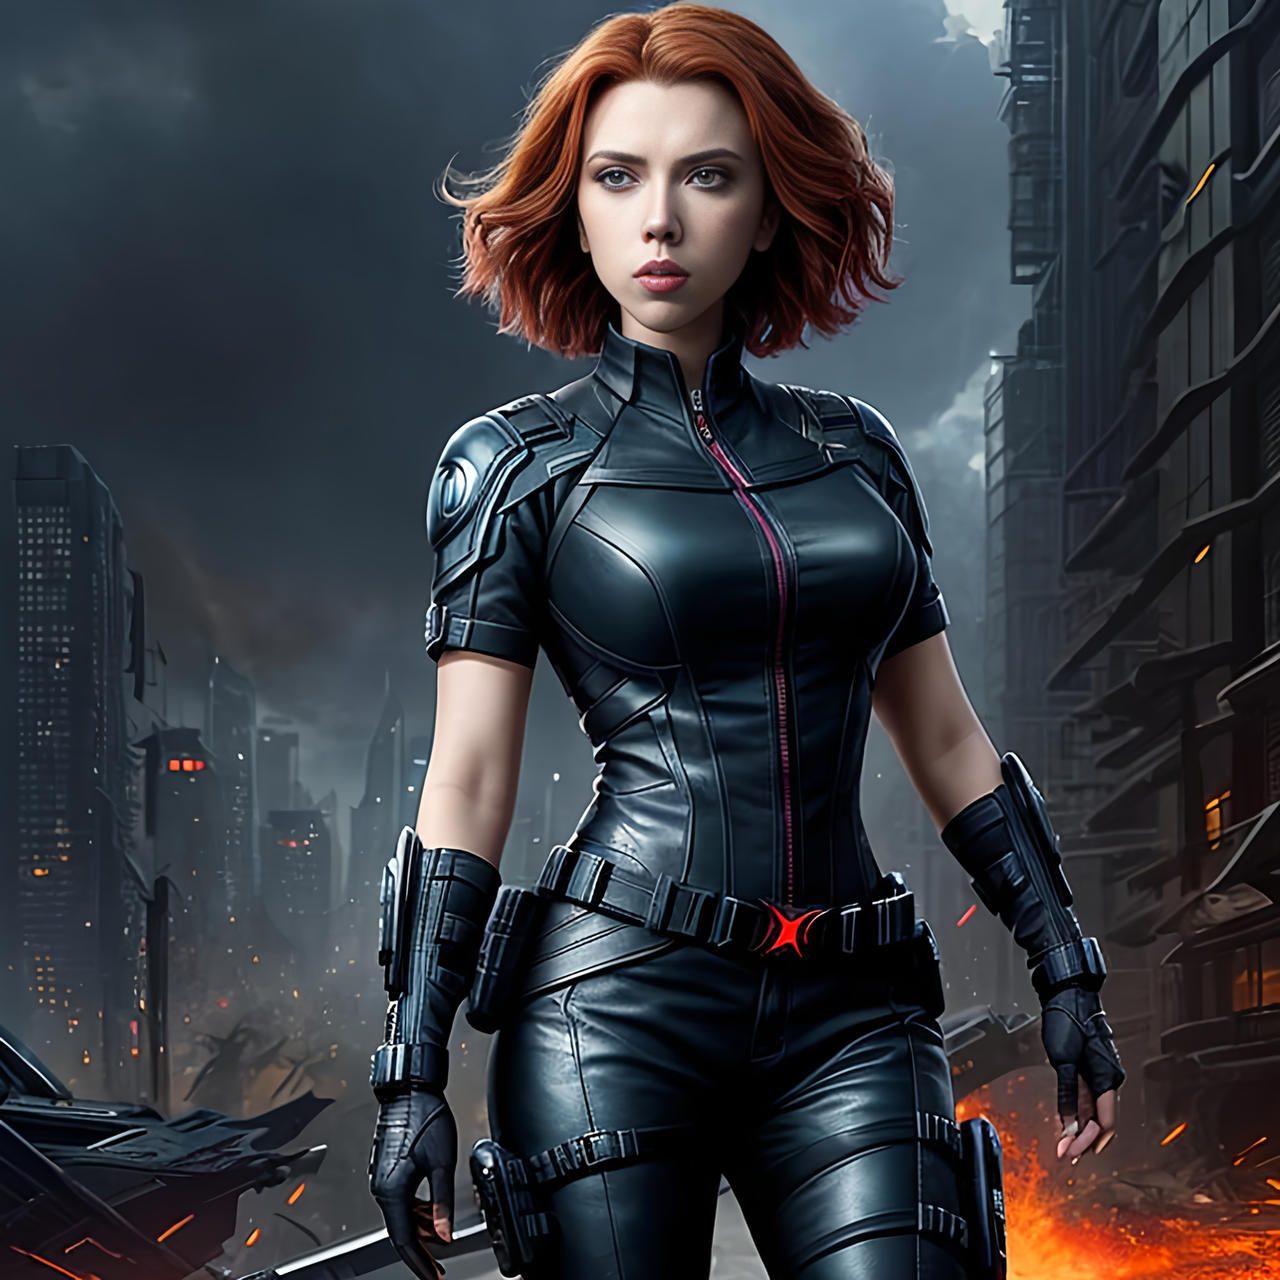 Scarlett Johansson as Black Widow #3 by QuantumReel on DeviantArt